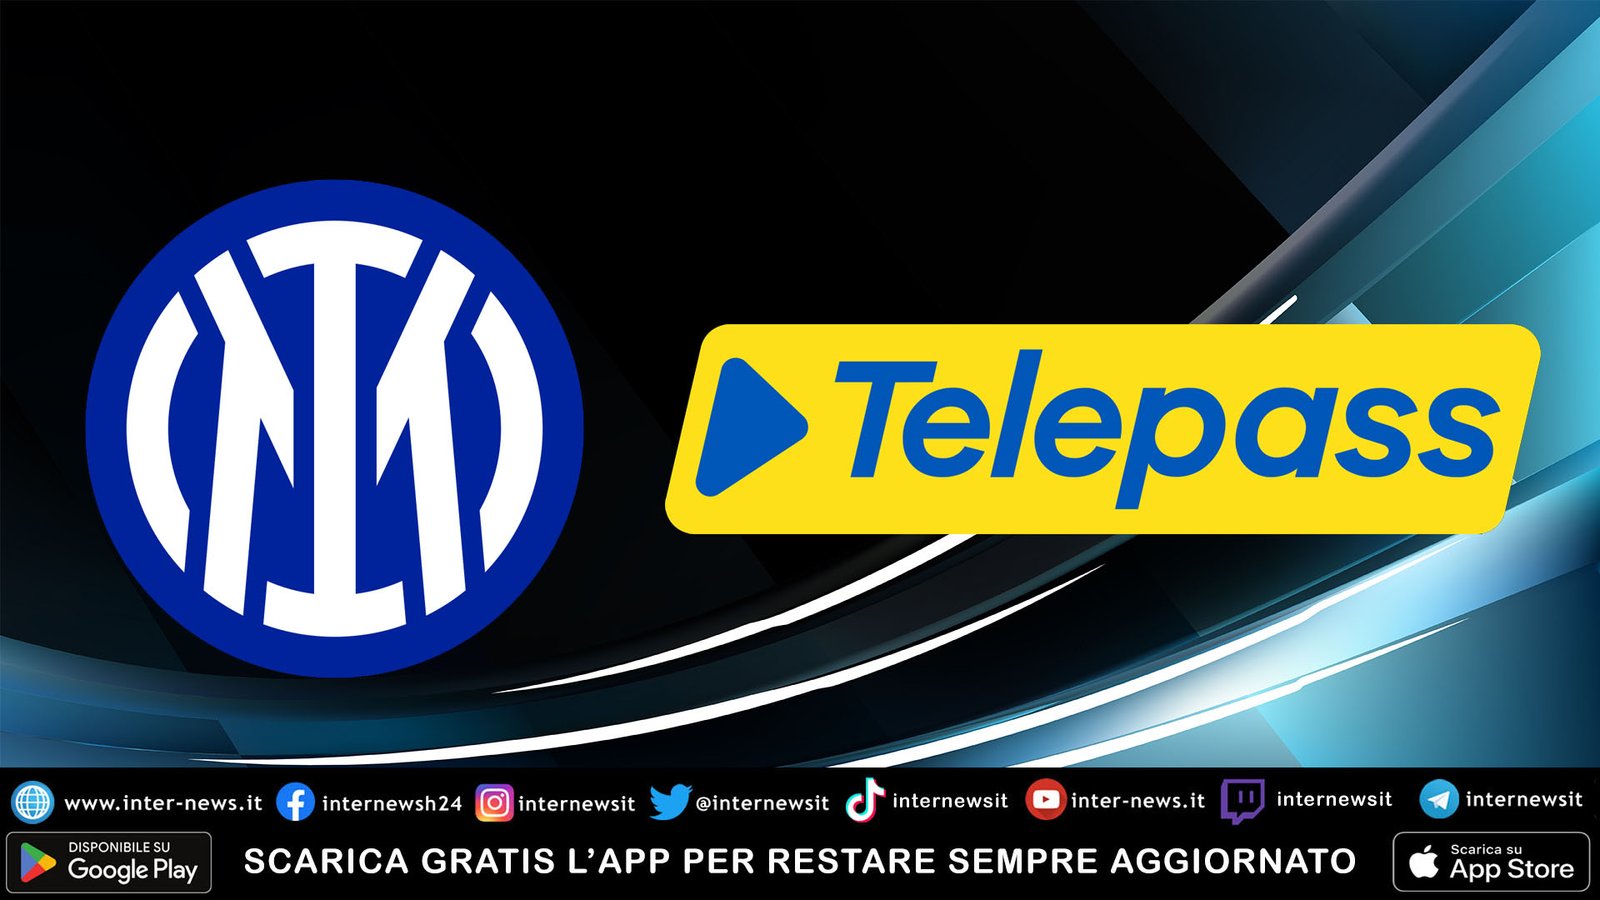 Telepass festeggia lo scudetto dell’Inter! Dispositivo limited edition: ecco come averlo